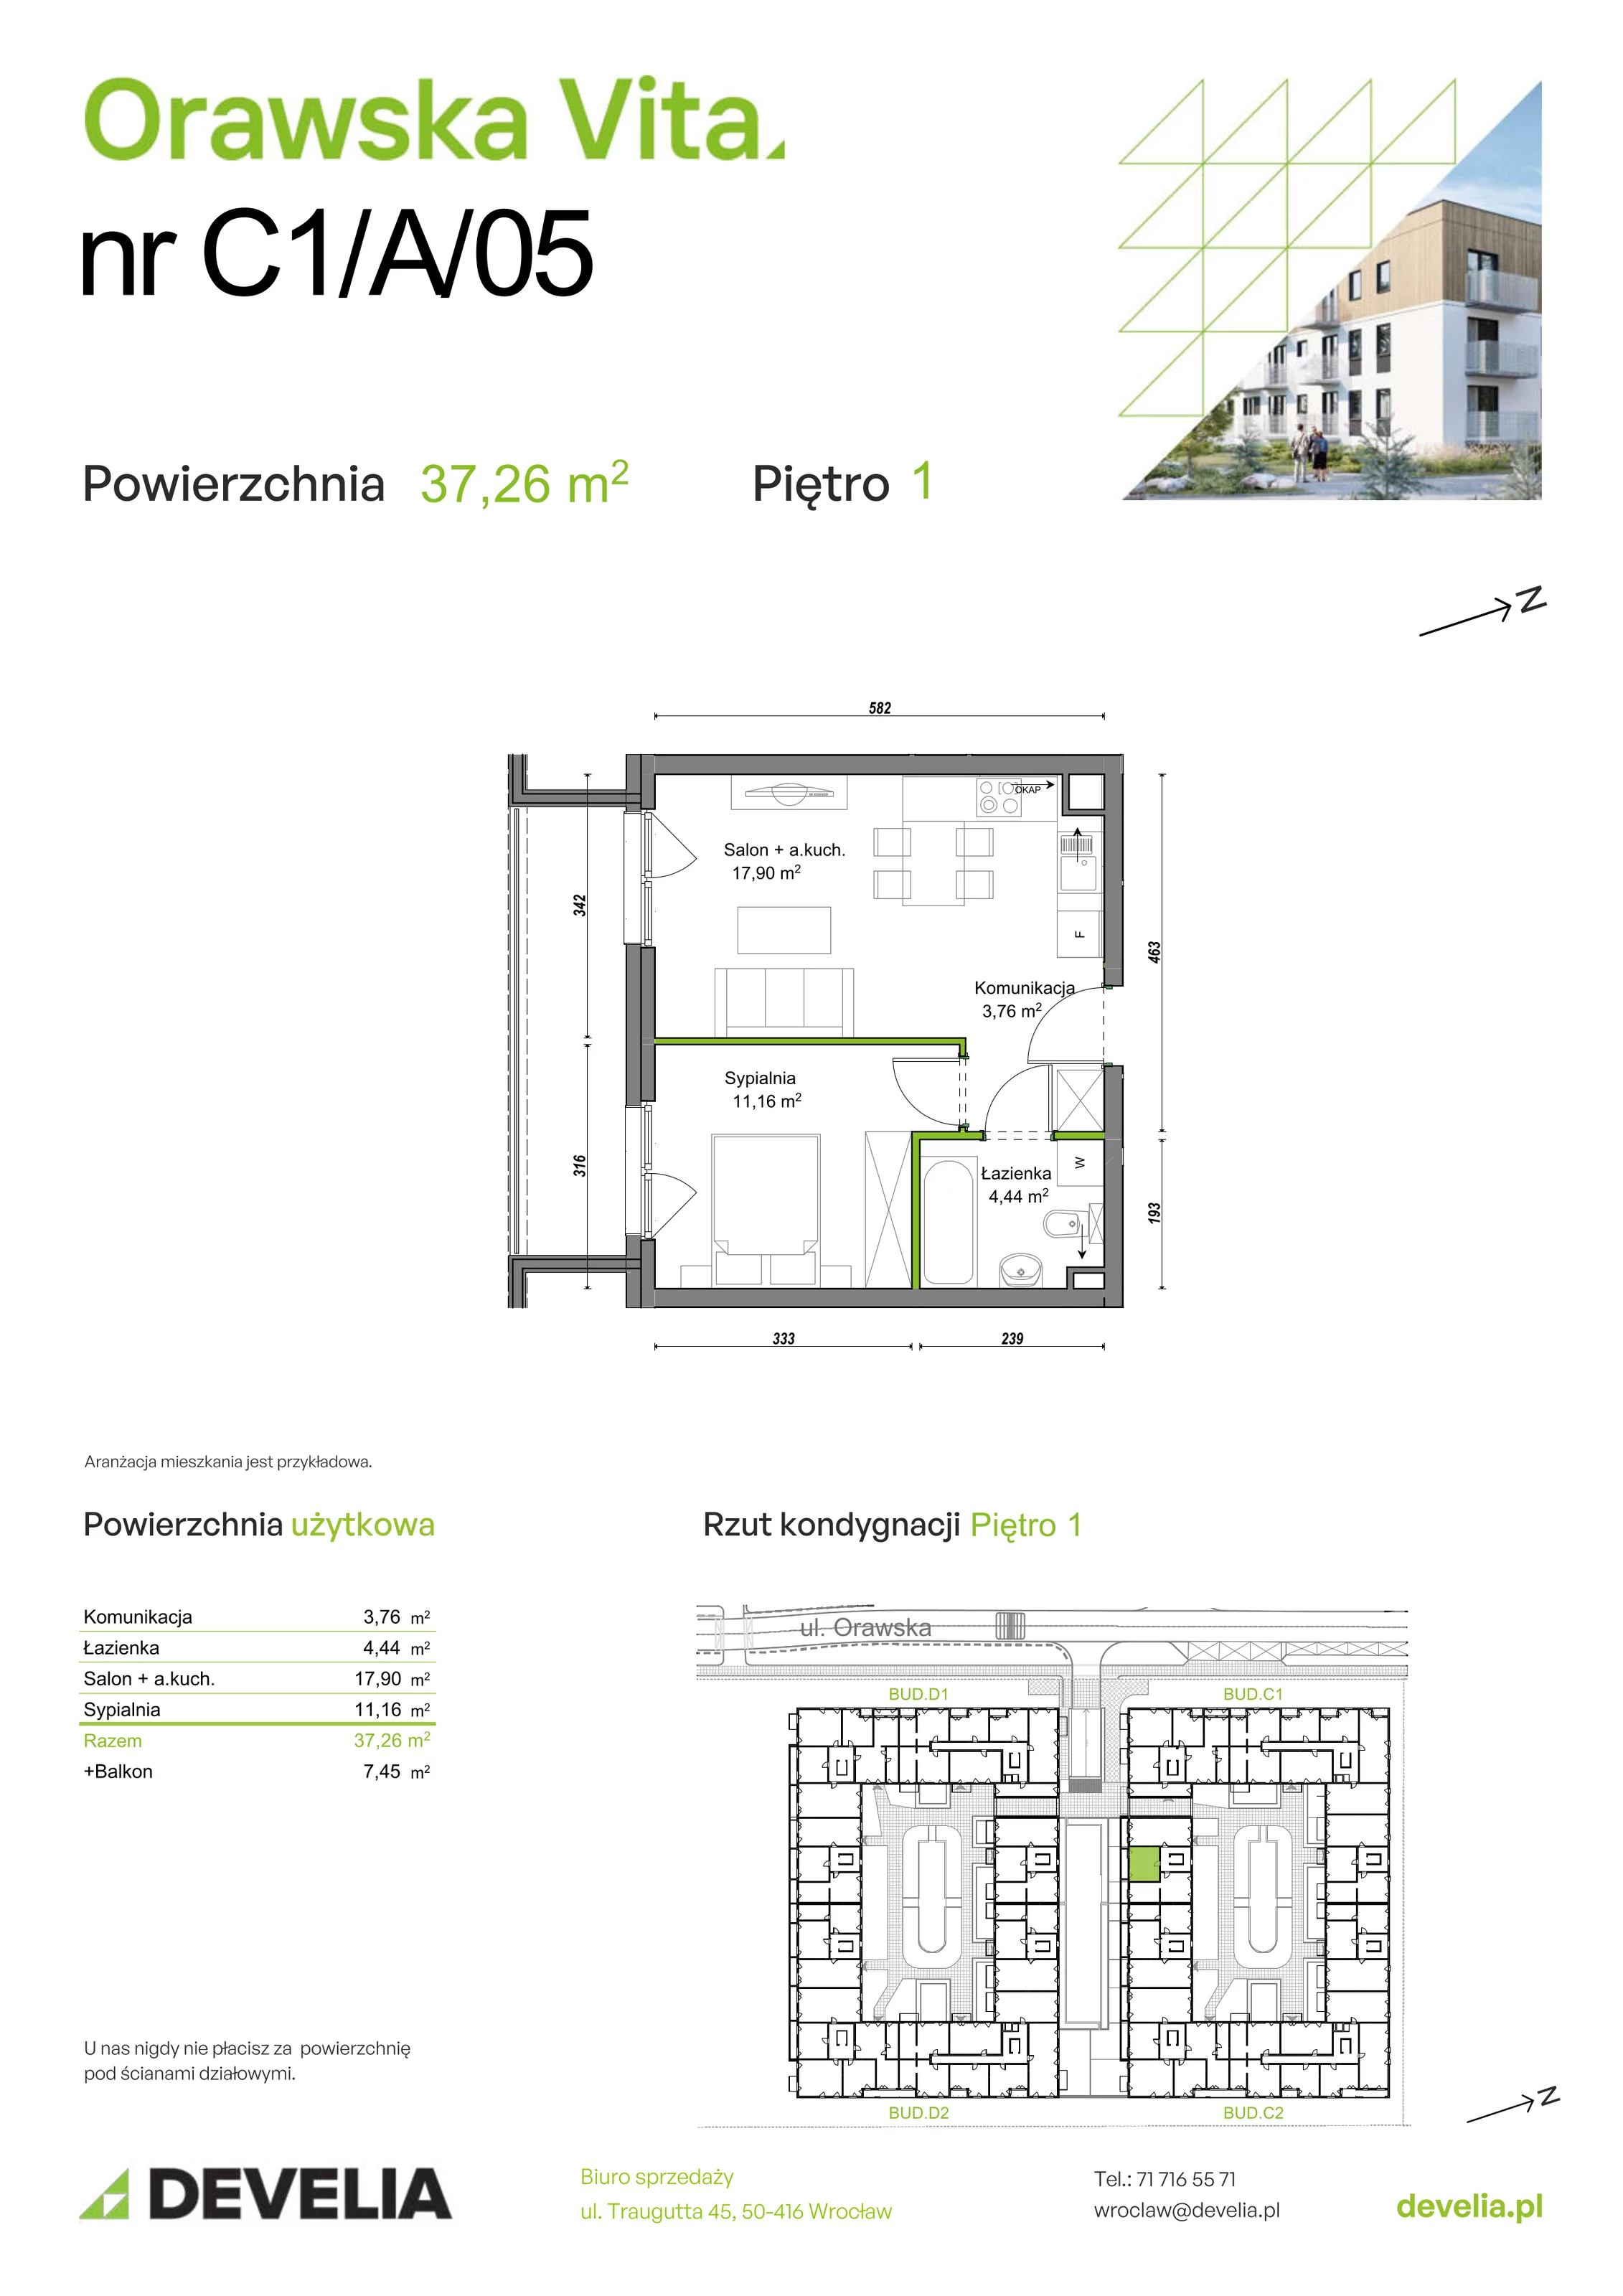 Mieszkanie 37,26 m², piętro 1, oferta nr C1/A/05, Orawska Vita, Wrocław, Ołtaszyn, Krzyki, ul. Orawska 73